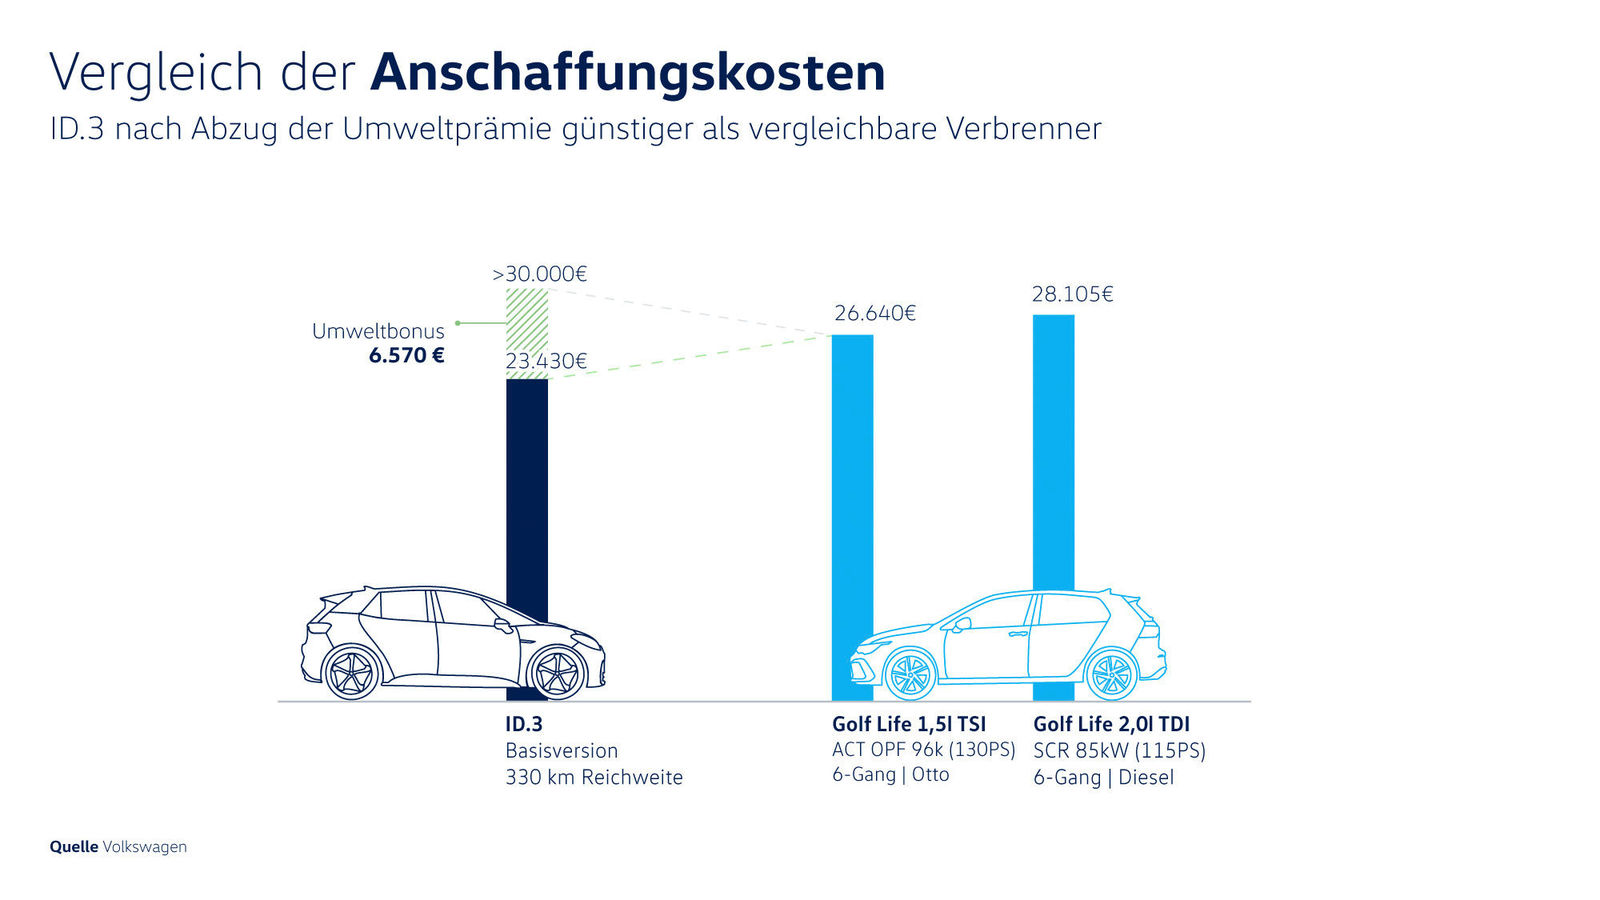 Elektroauto: Reichweite & Verbrauch im Vergleich